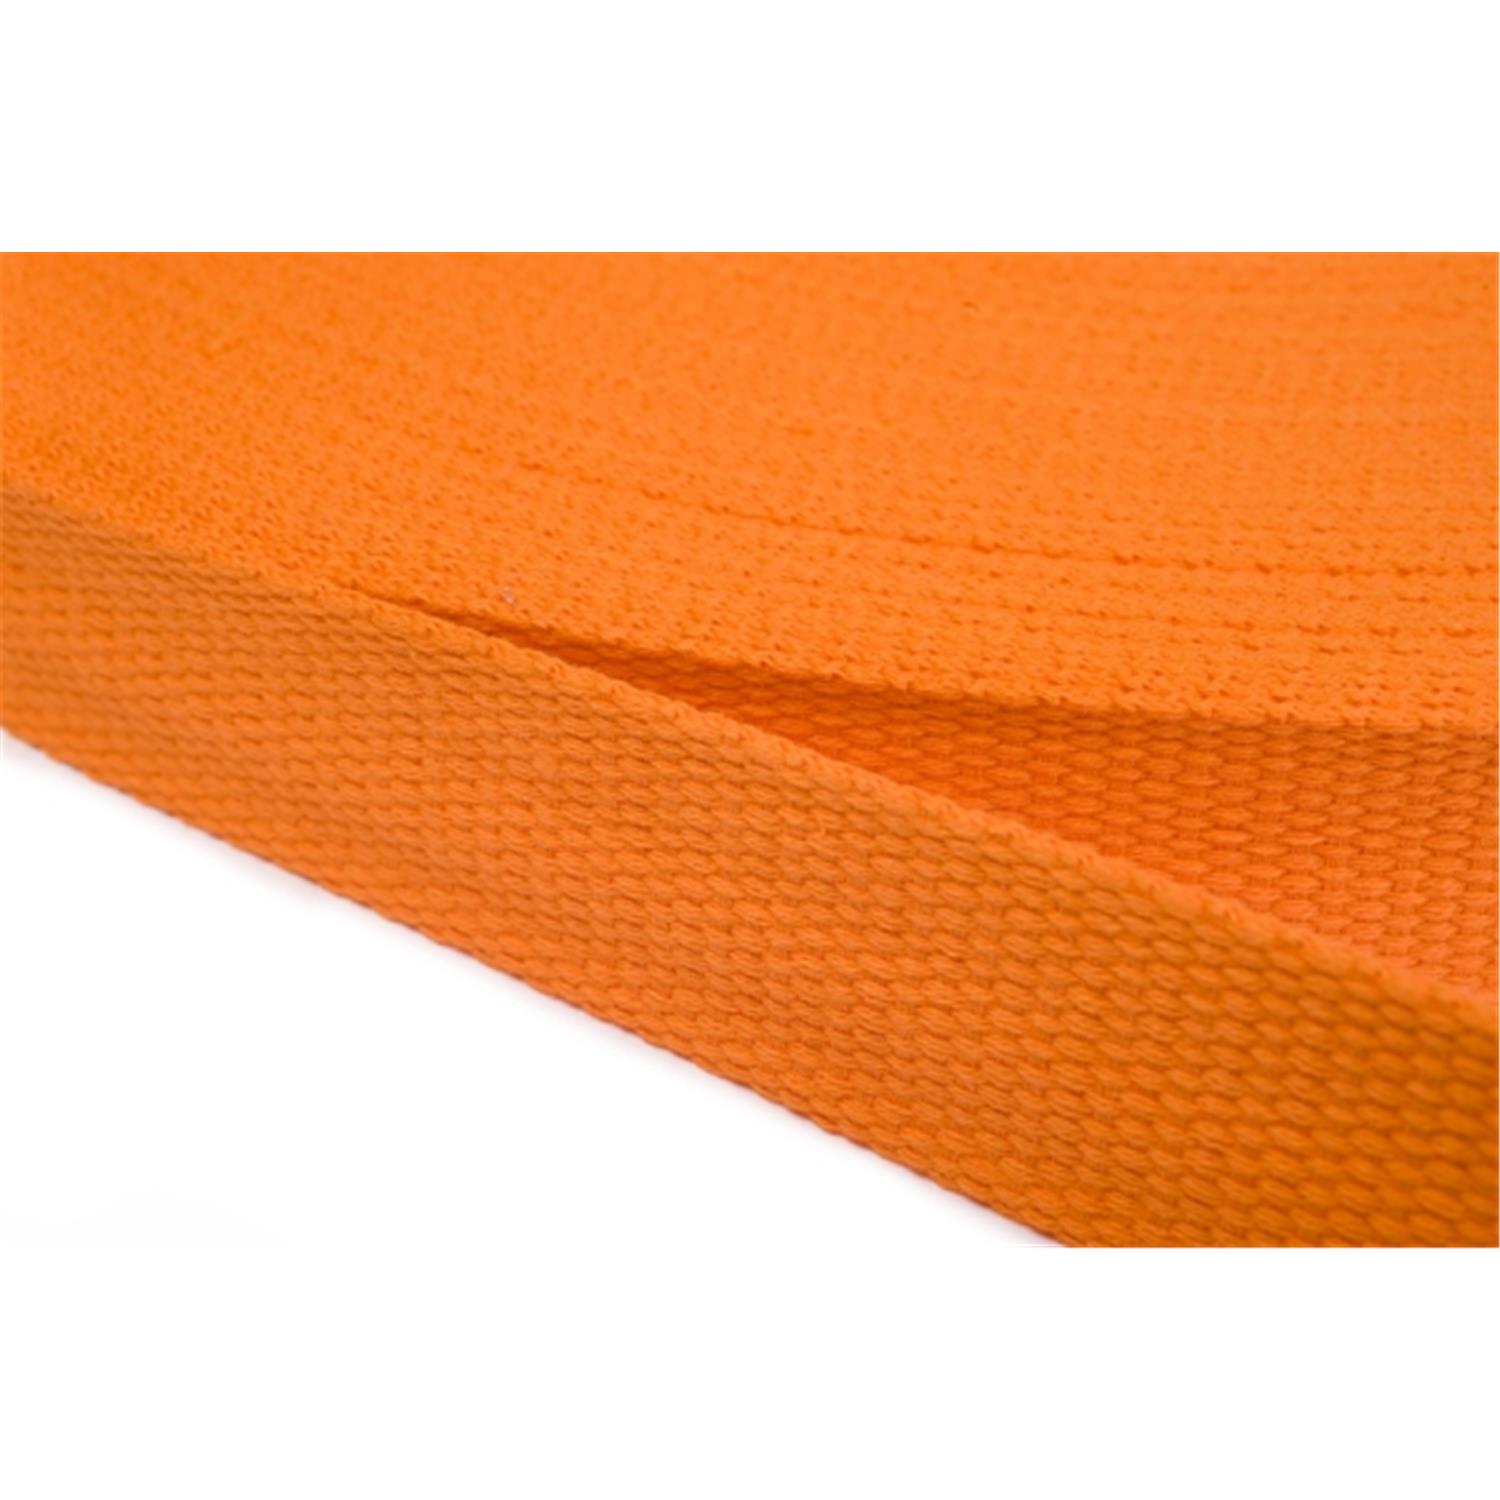 Gurtband aus Baumwolle 10mm in 20 Farben 06 - orange 6 Meter